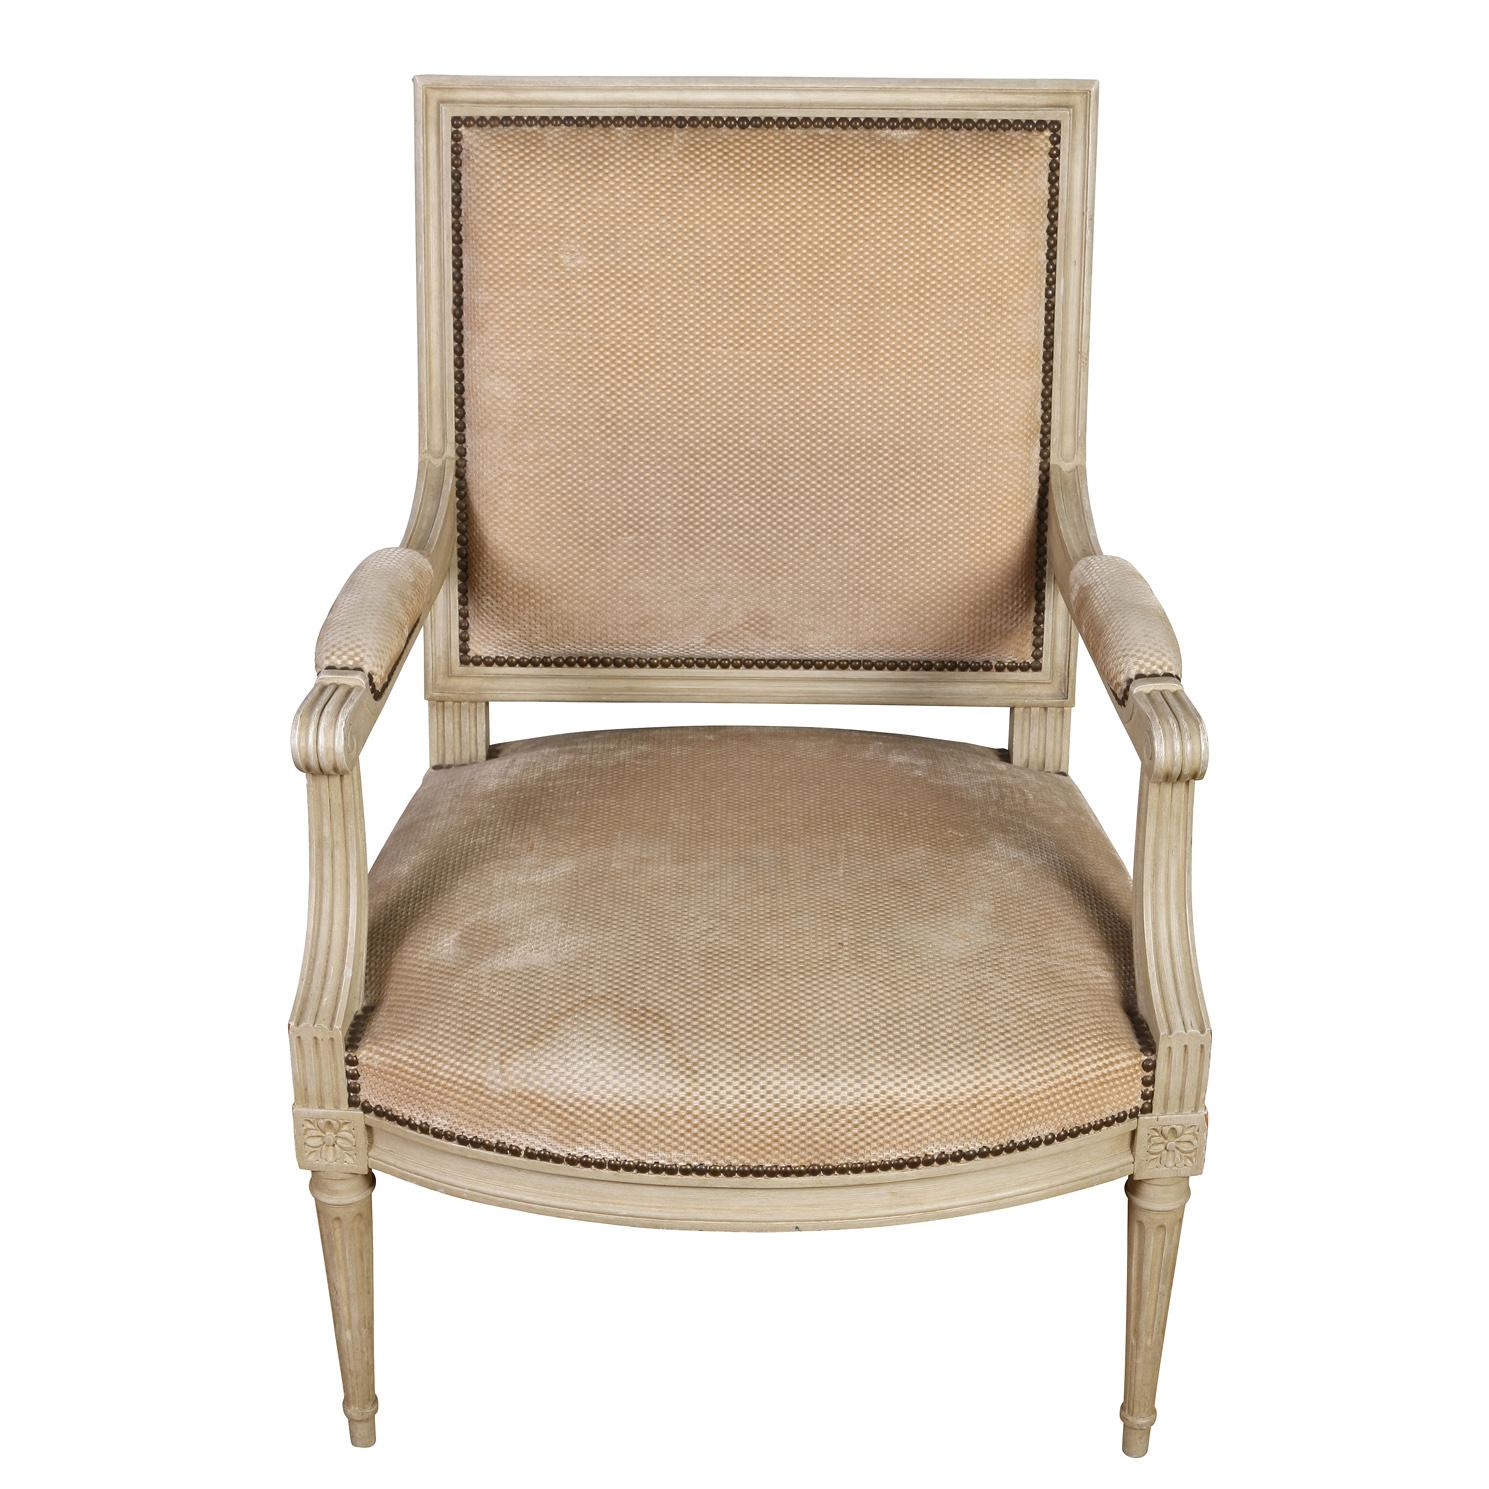 Ein Paar übergroße, bemalte französische Sessel um 1940.  Das Paar Louis XVI-Stühle ist weiß gestrichen, hat quadratische Rückenlehnen, geriffelte und geschnitzte Rahmen, Armlehnen und konische Beine.  Jedes Bein trifft auf den Sitzrahmen mit einem